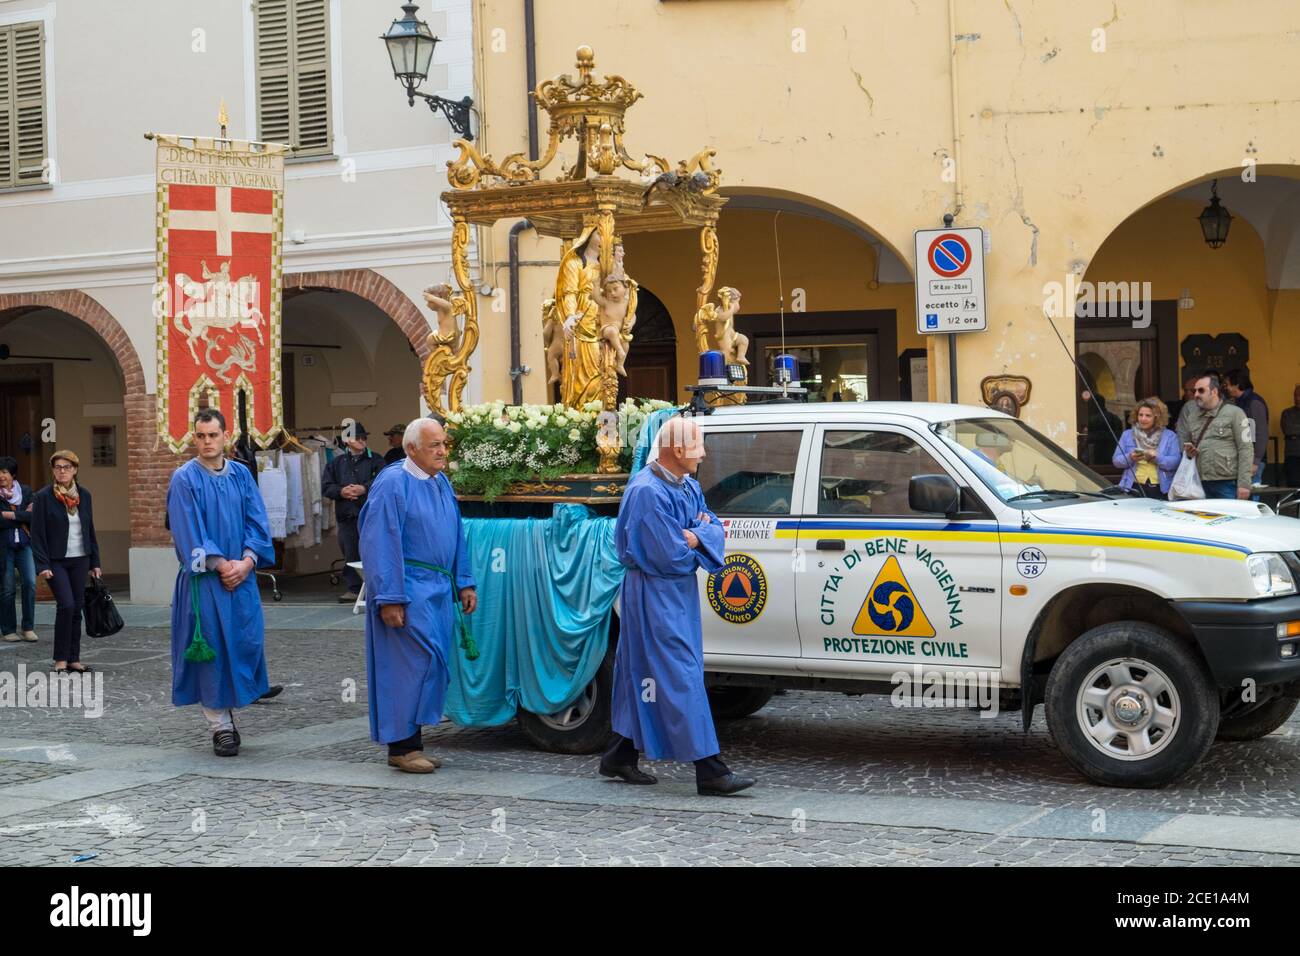 Processione religiosa cattolica nella cittadina di bene Vagienna, Cuneo, Italia Foto Stock